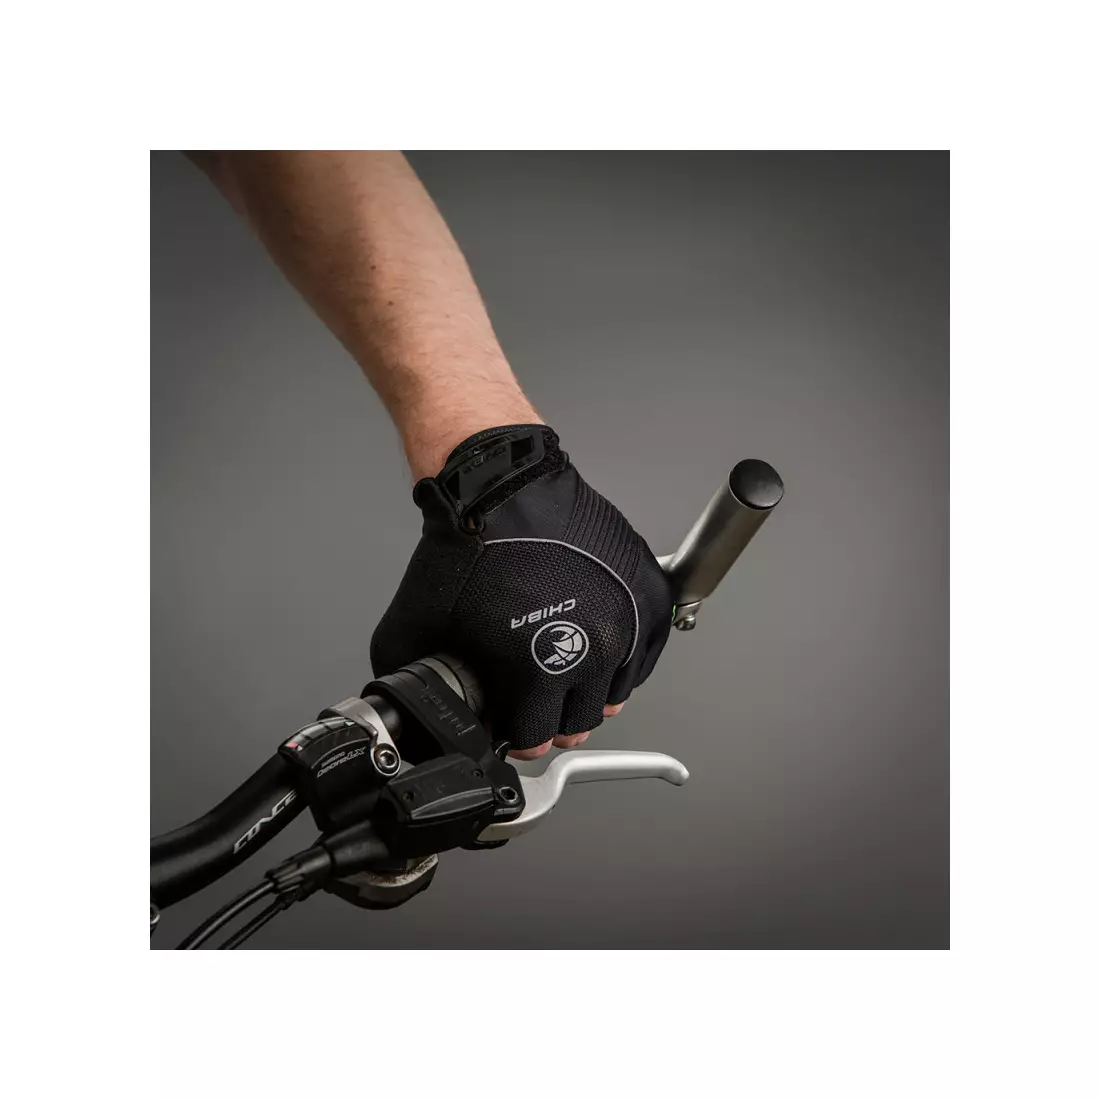 CHIBA cyklistické rukavice bioxcell čierne 3060120